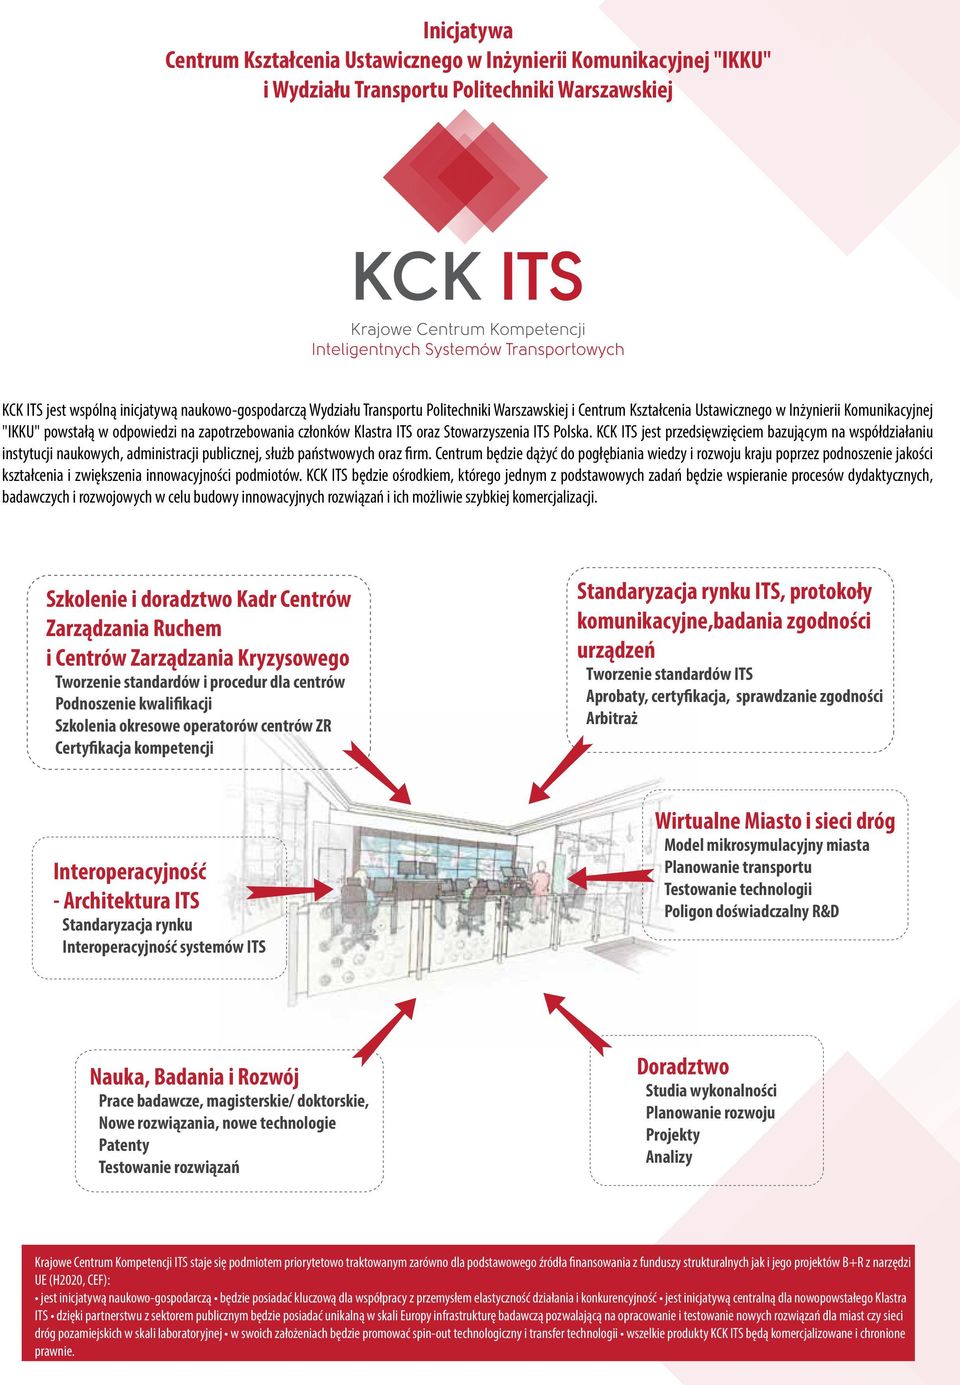 KCK ITS jest przedsięwzięciem bazującym na współdziałaniu instytucji naukowych, administracji publicznej, służb państwowych oraz firm.